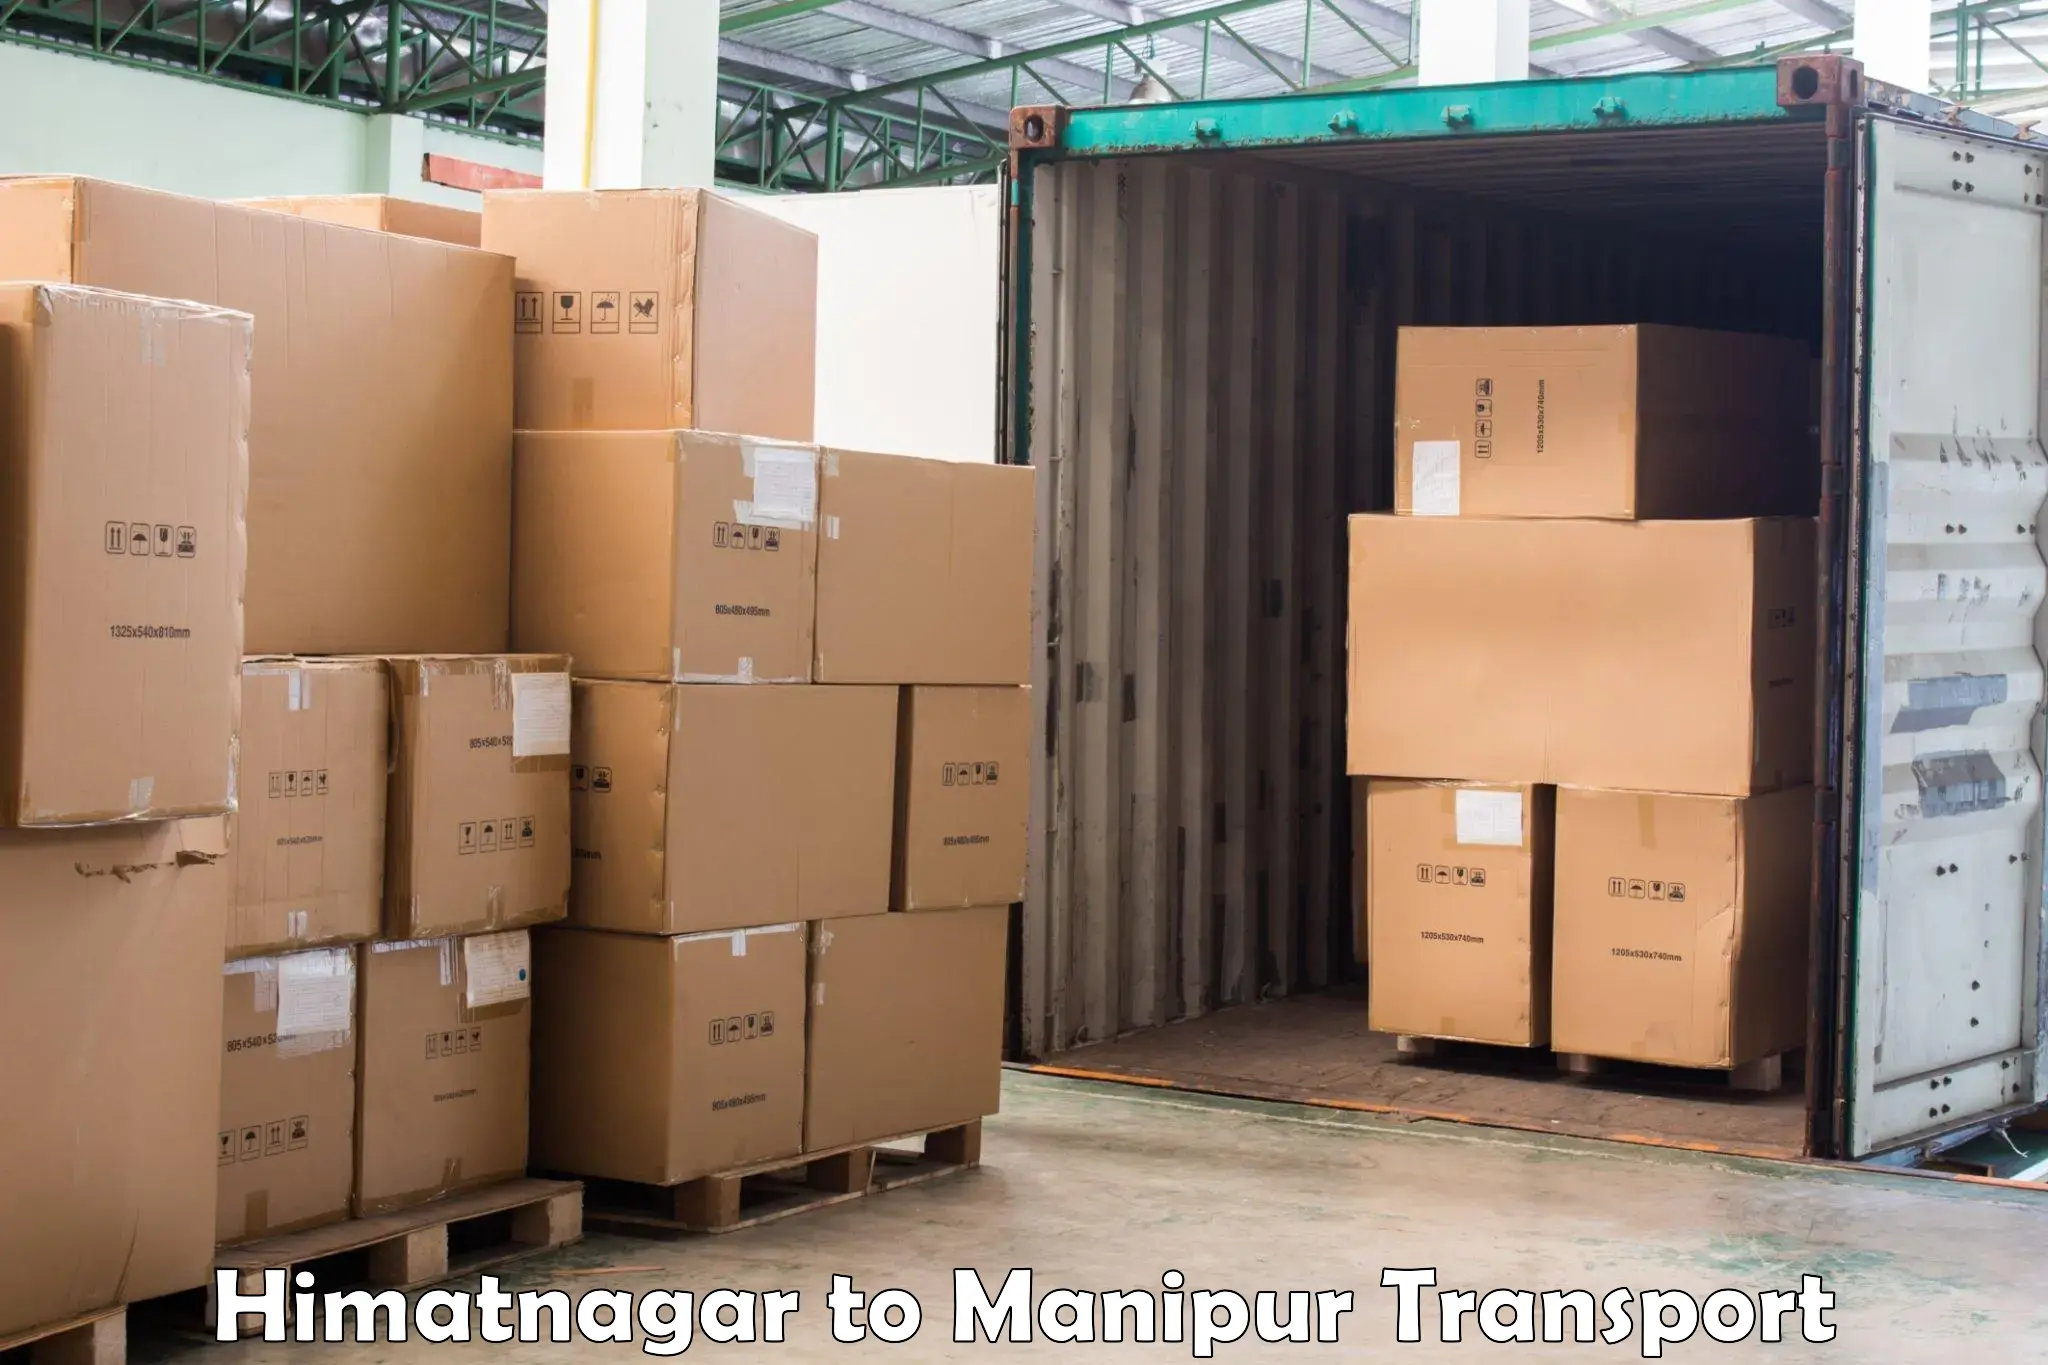 Container transport service Himatnagar to Kanti